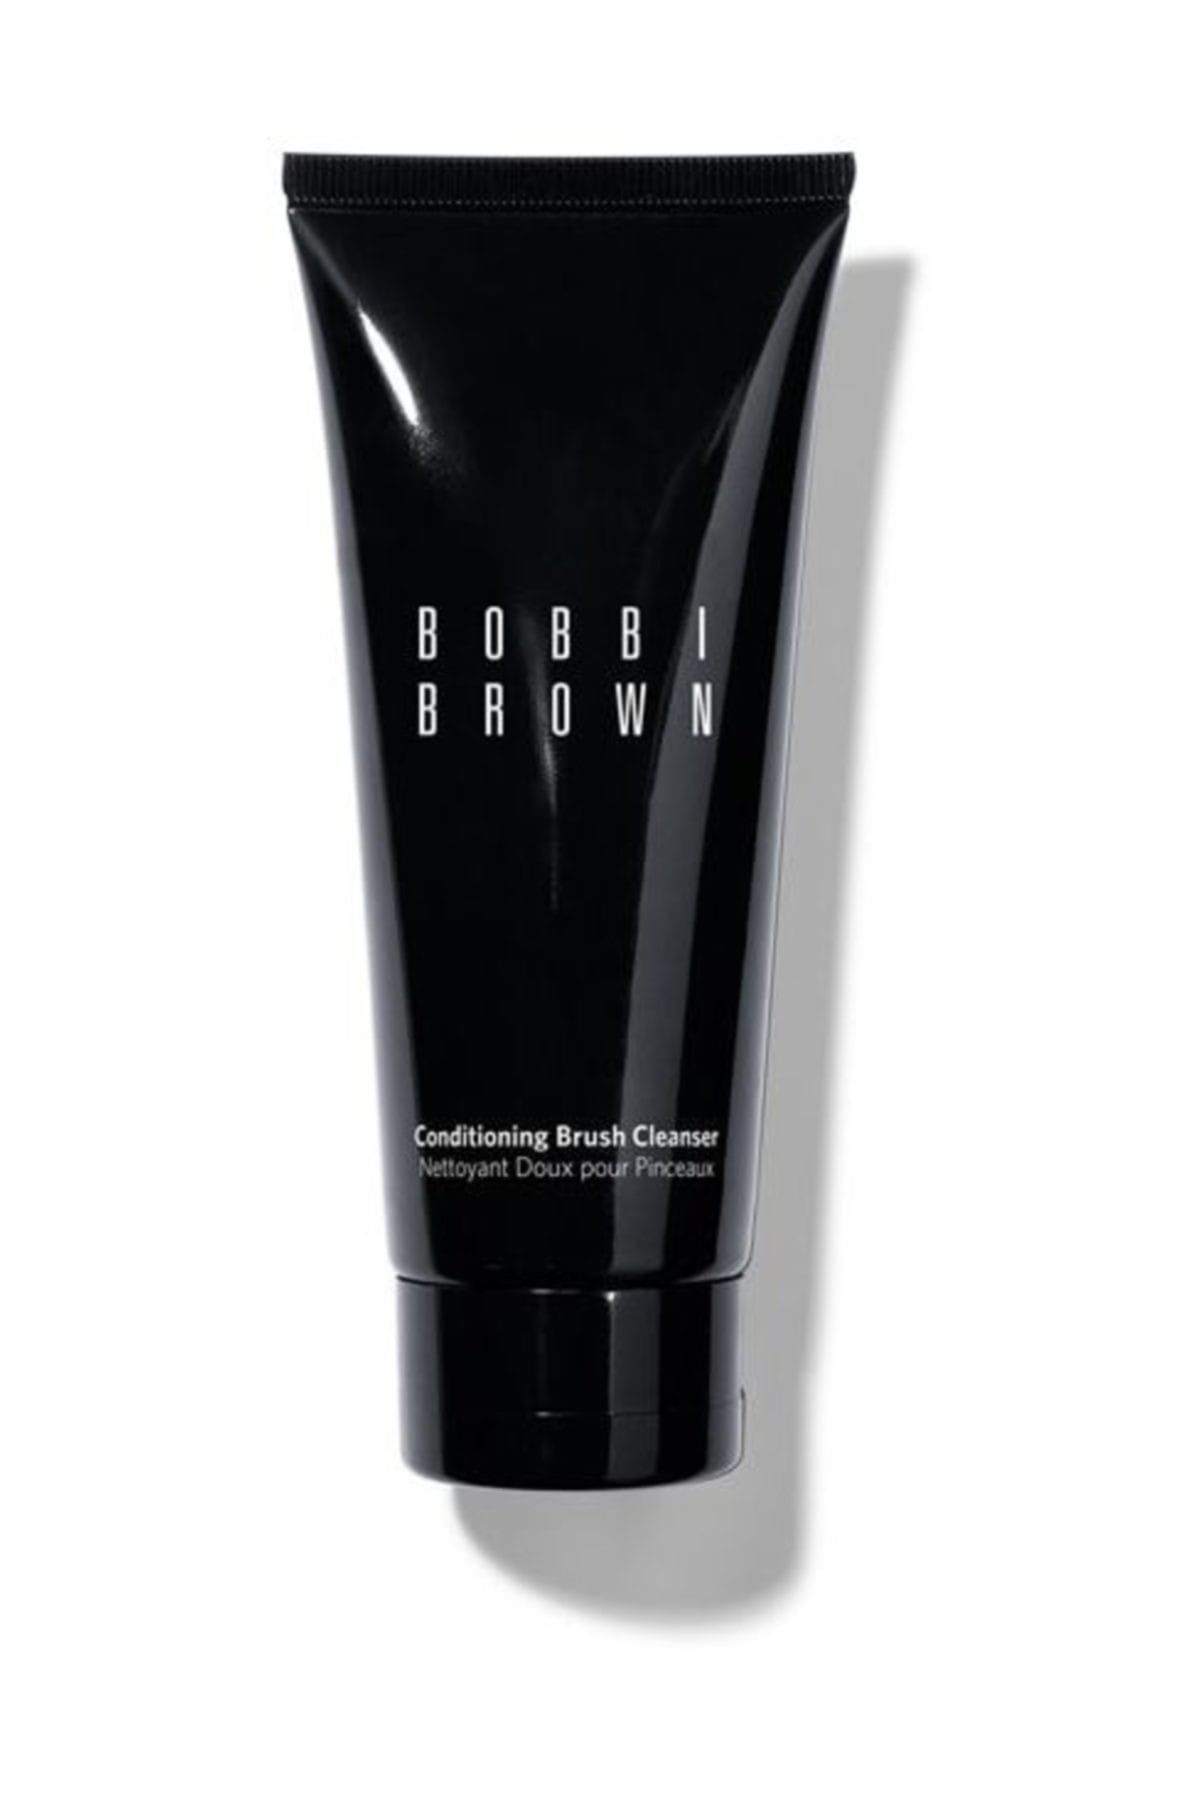 Bobbi Brown Conditioning Brush Cleanser / Fırça Temizleyici 100 ml 716170004129